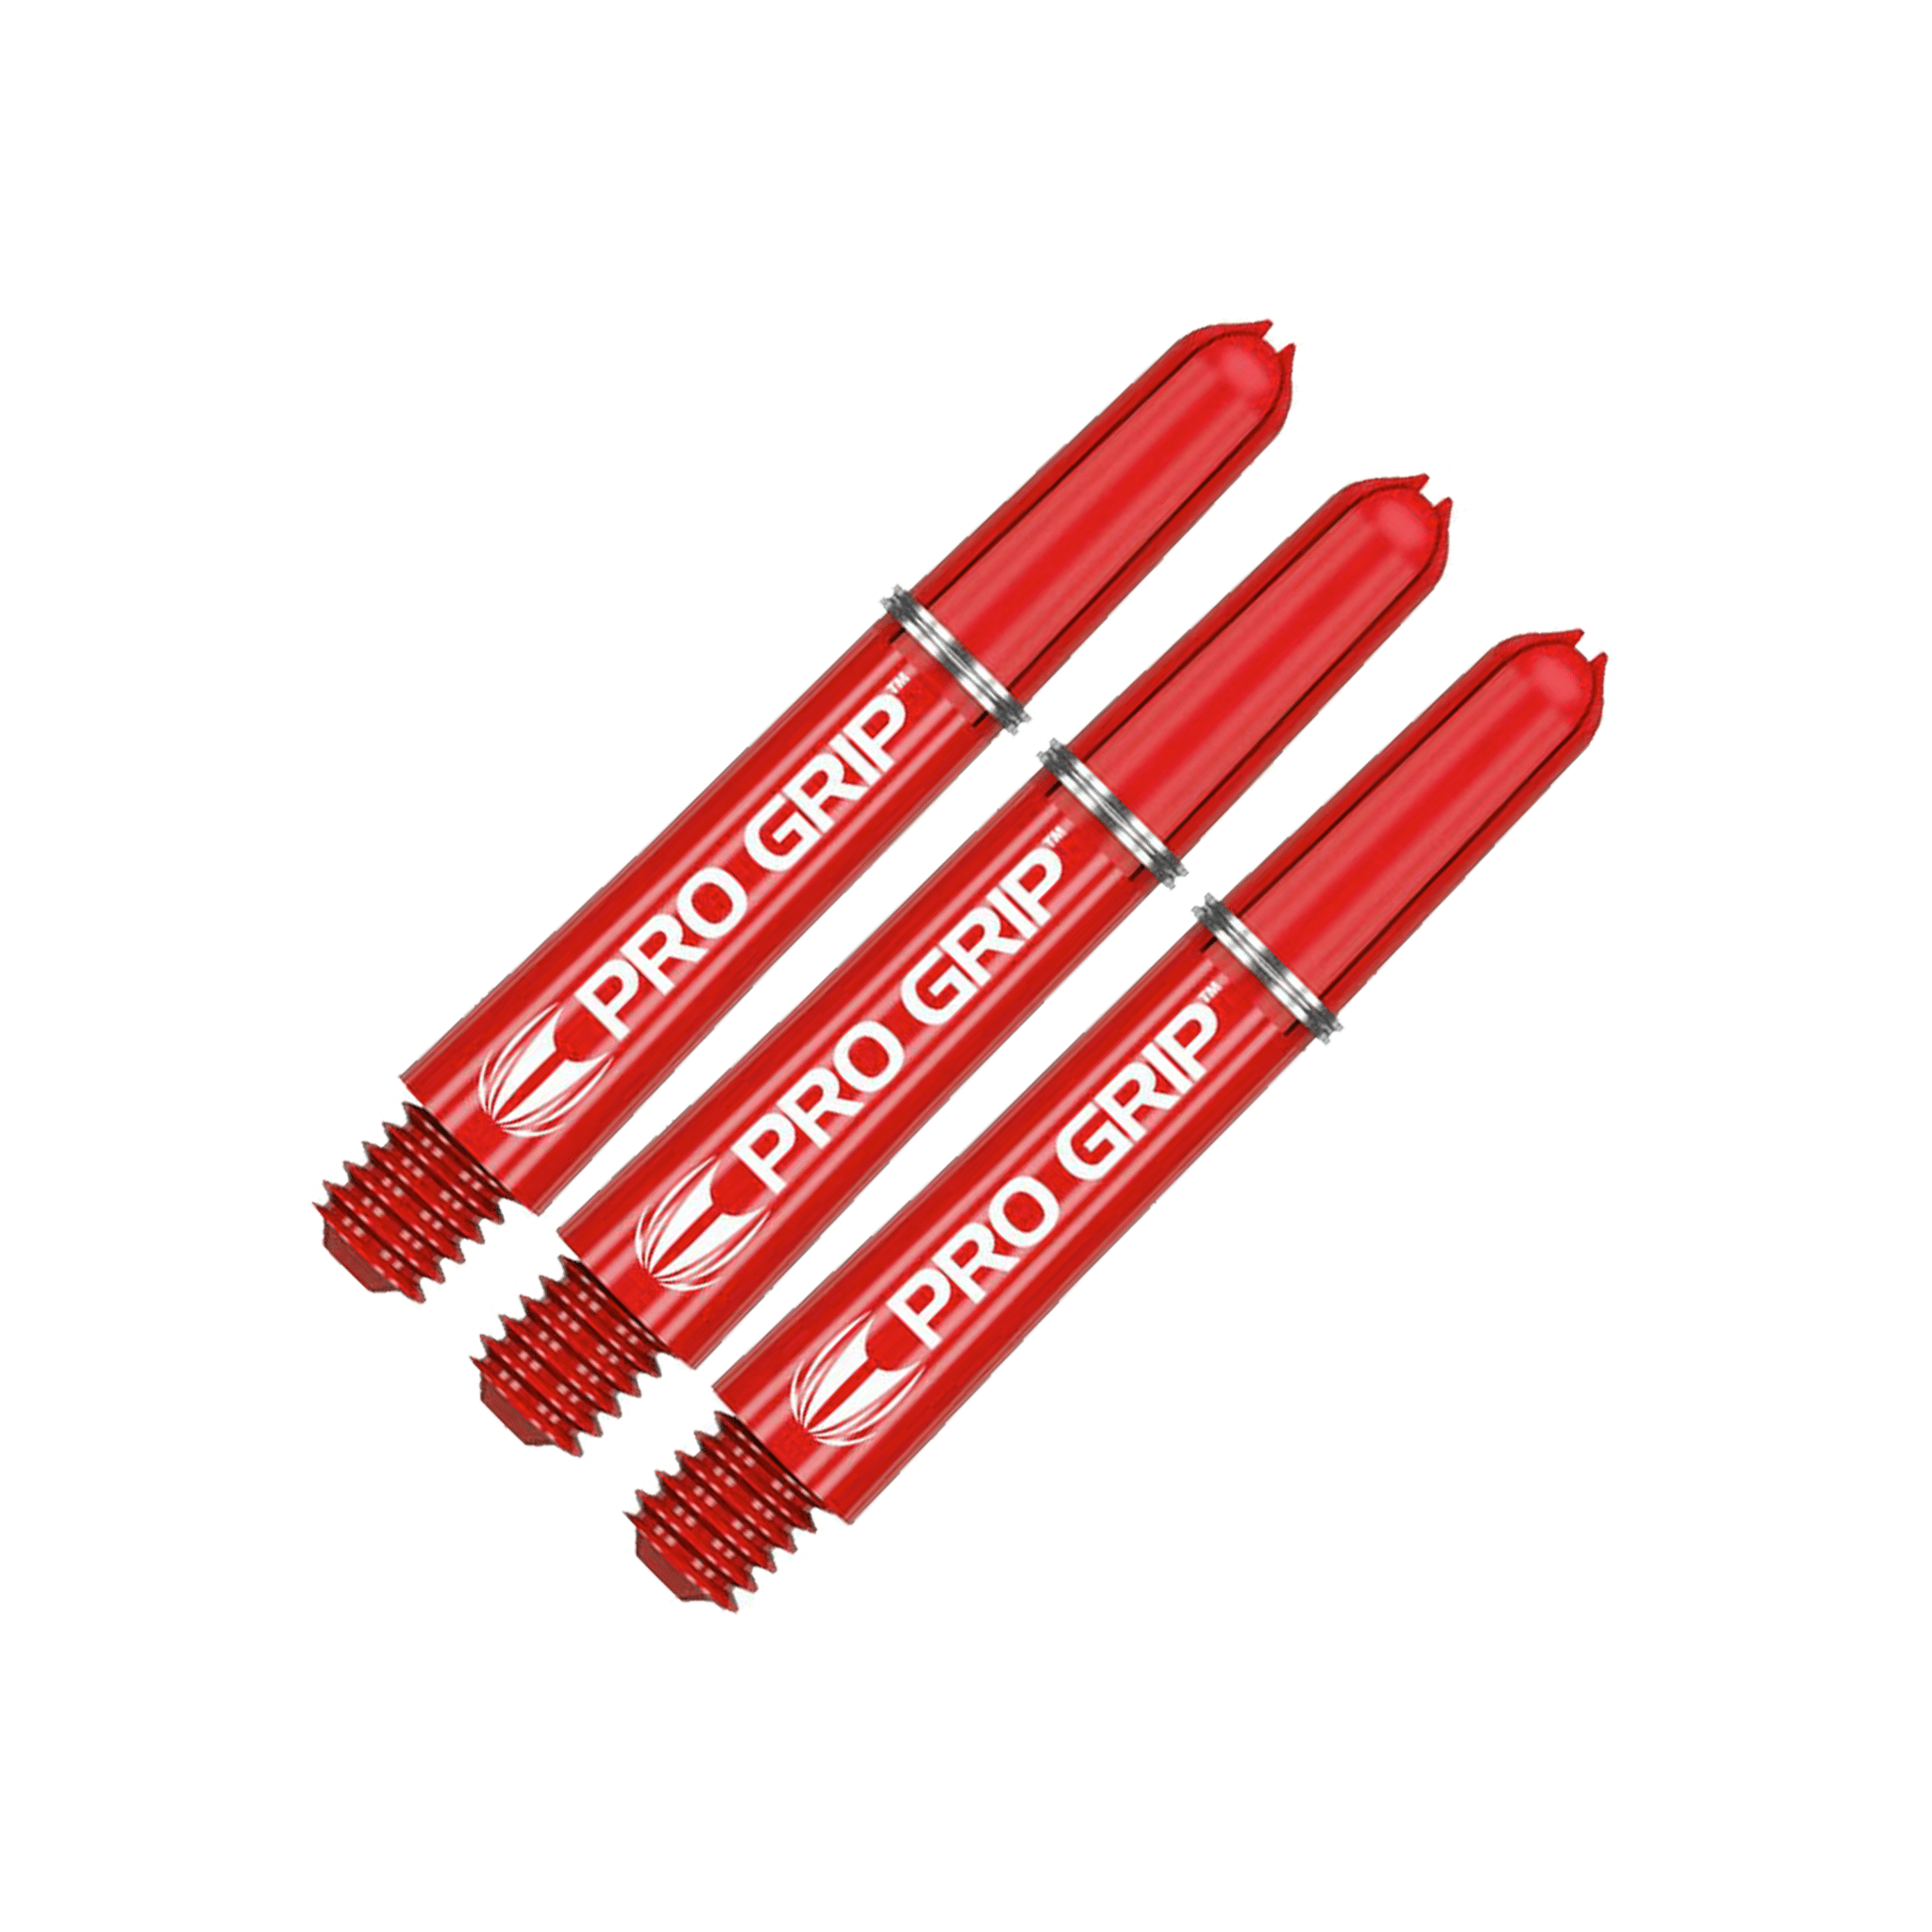 Target Pro Grip Multi Pack - Nylon Dart Shafts (3 Sets) Red / Short (34mm) Shafts